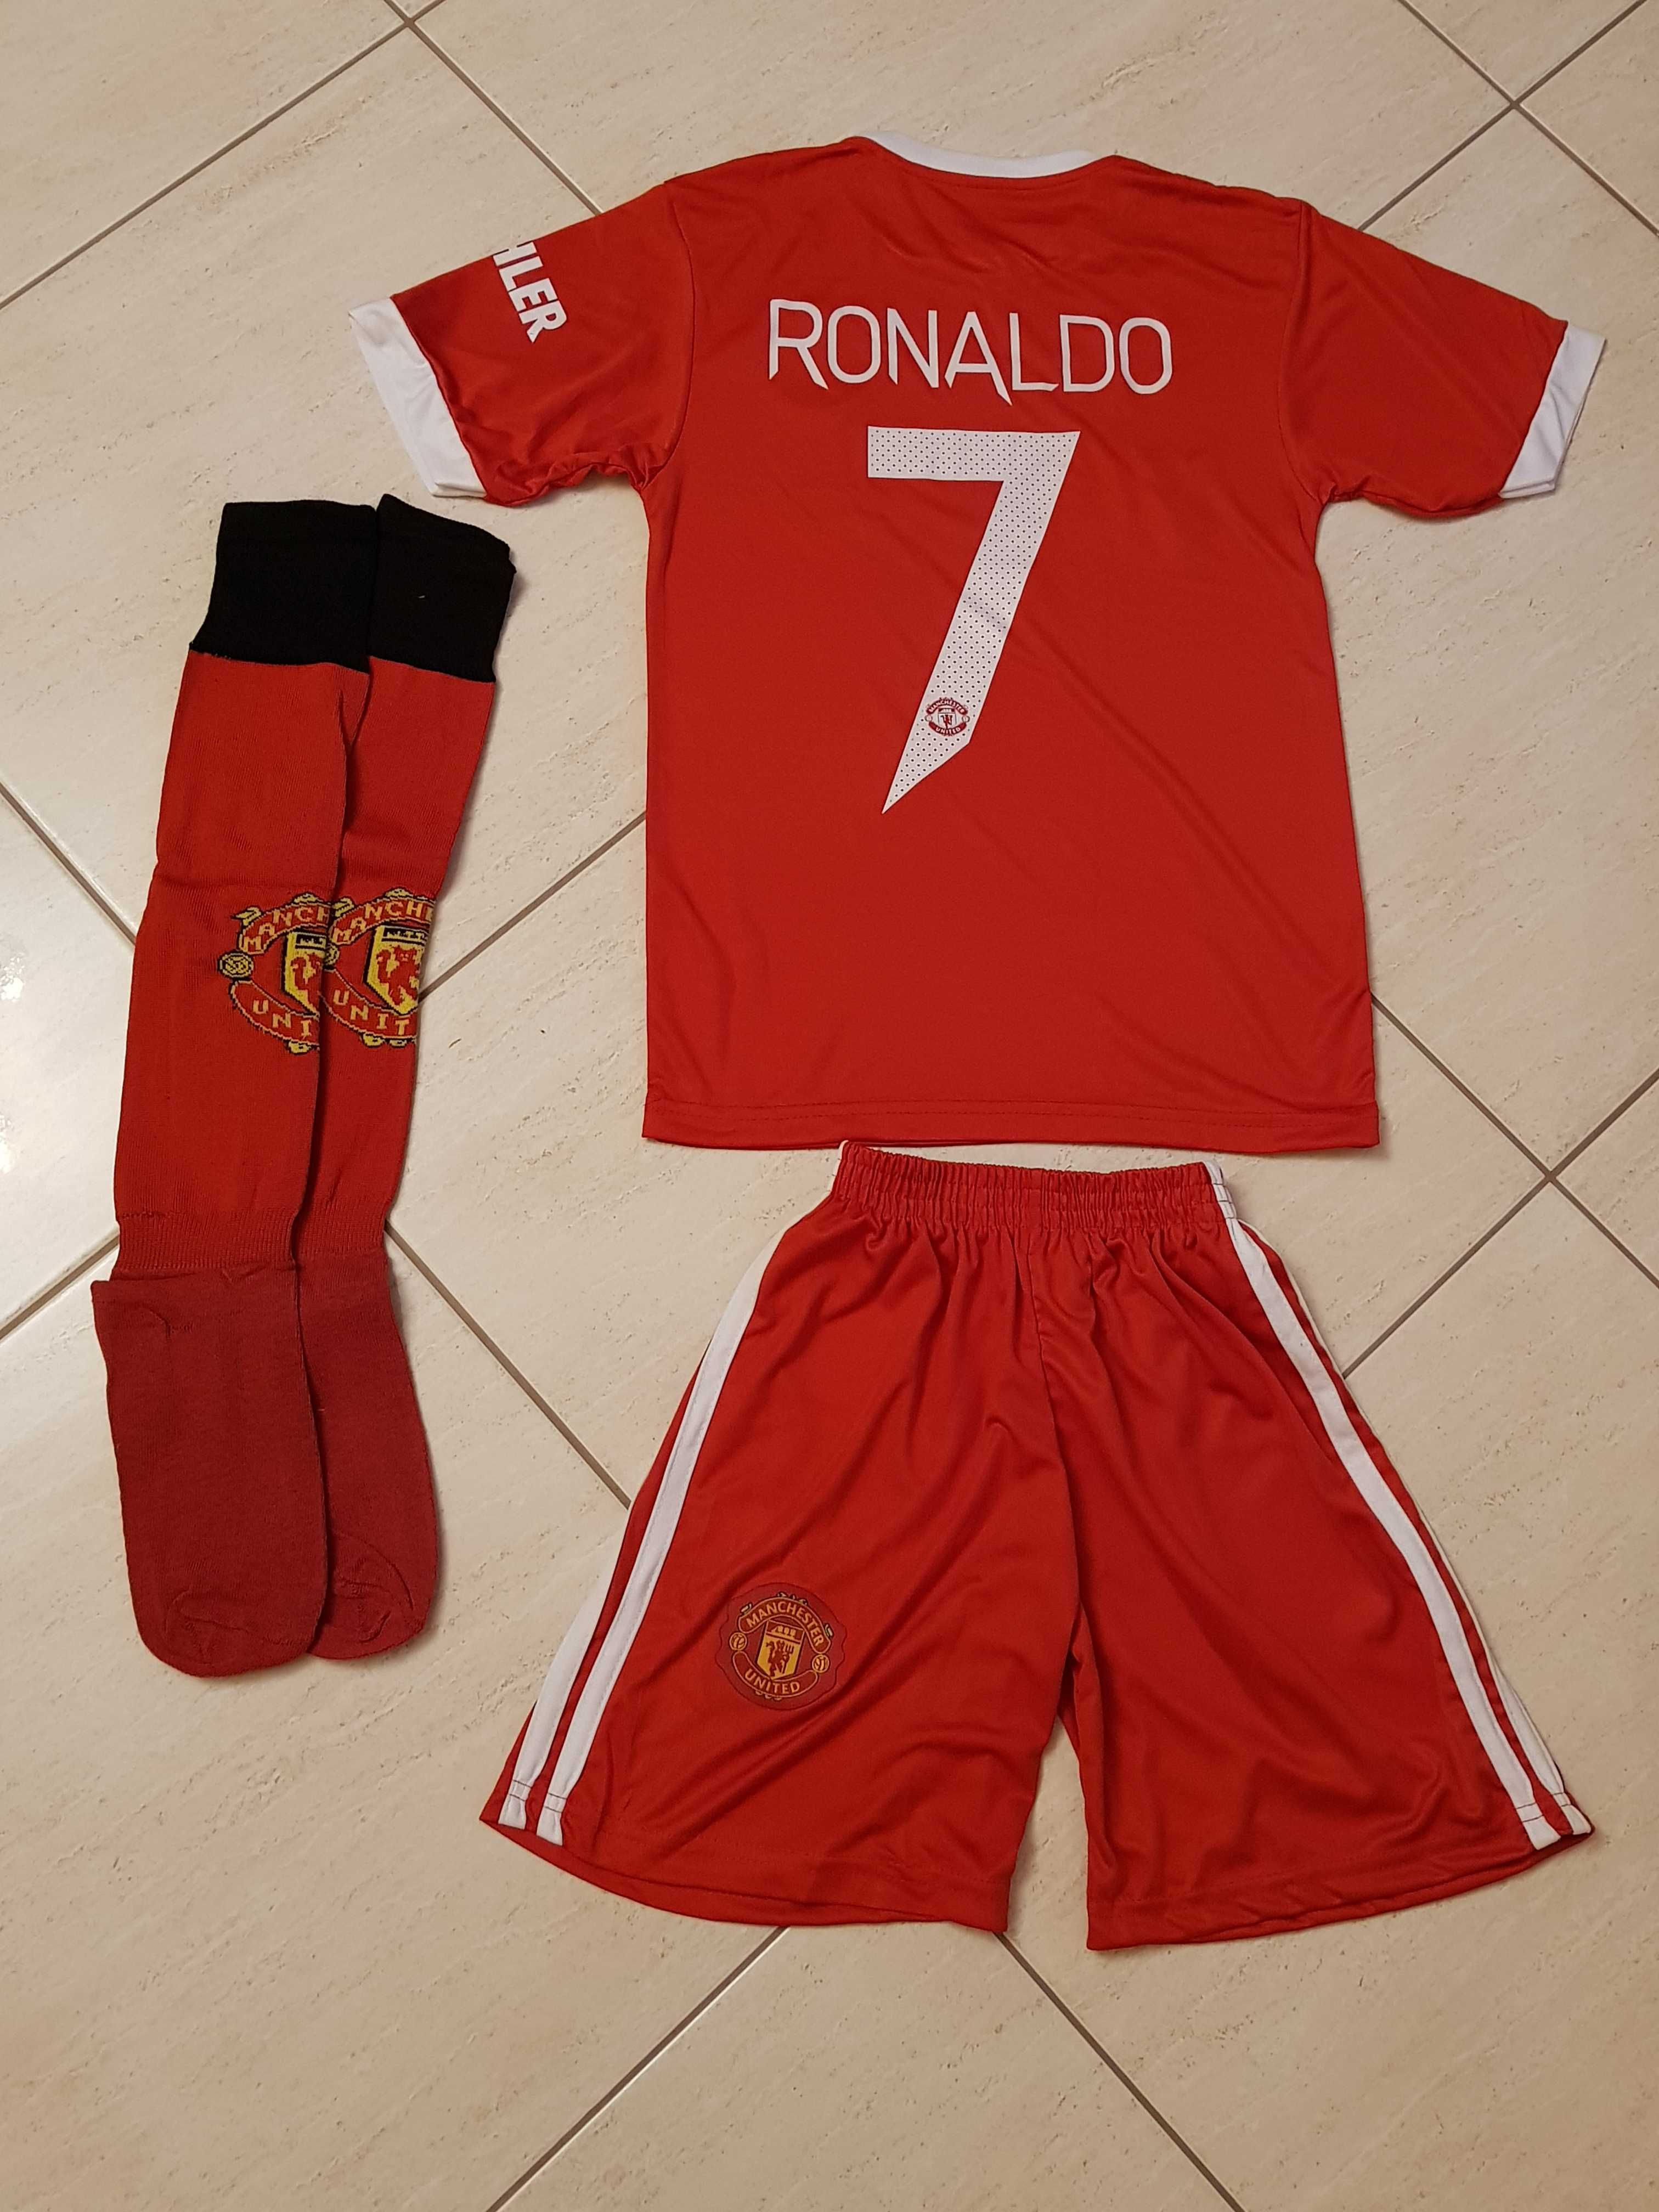 ПРОМО Ronaldo Ман. Юн. Анцуг + Екип + Подарък чорапи до 21.10.2022г